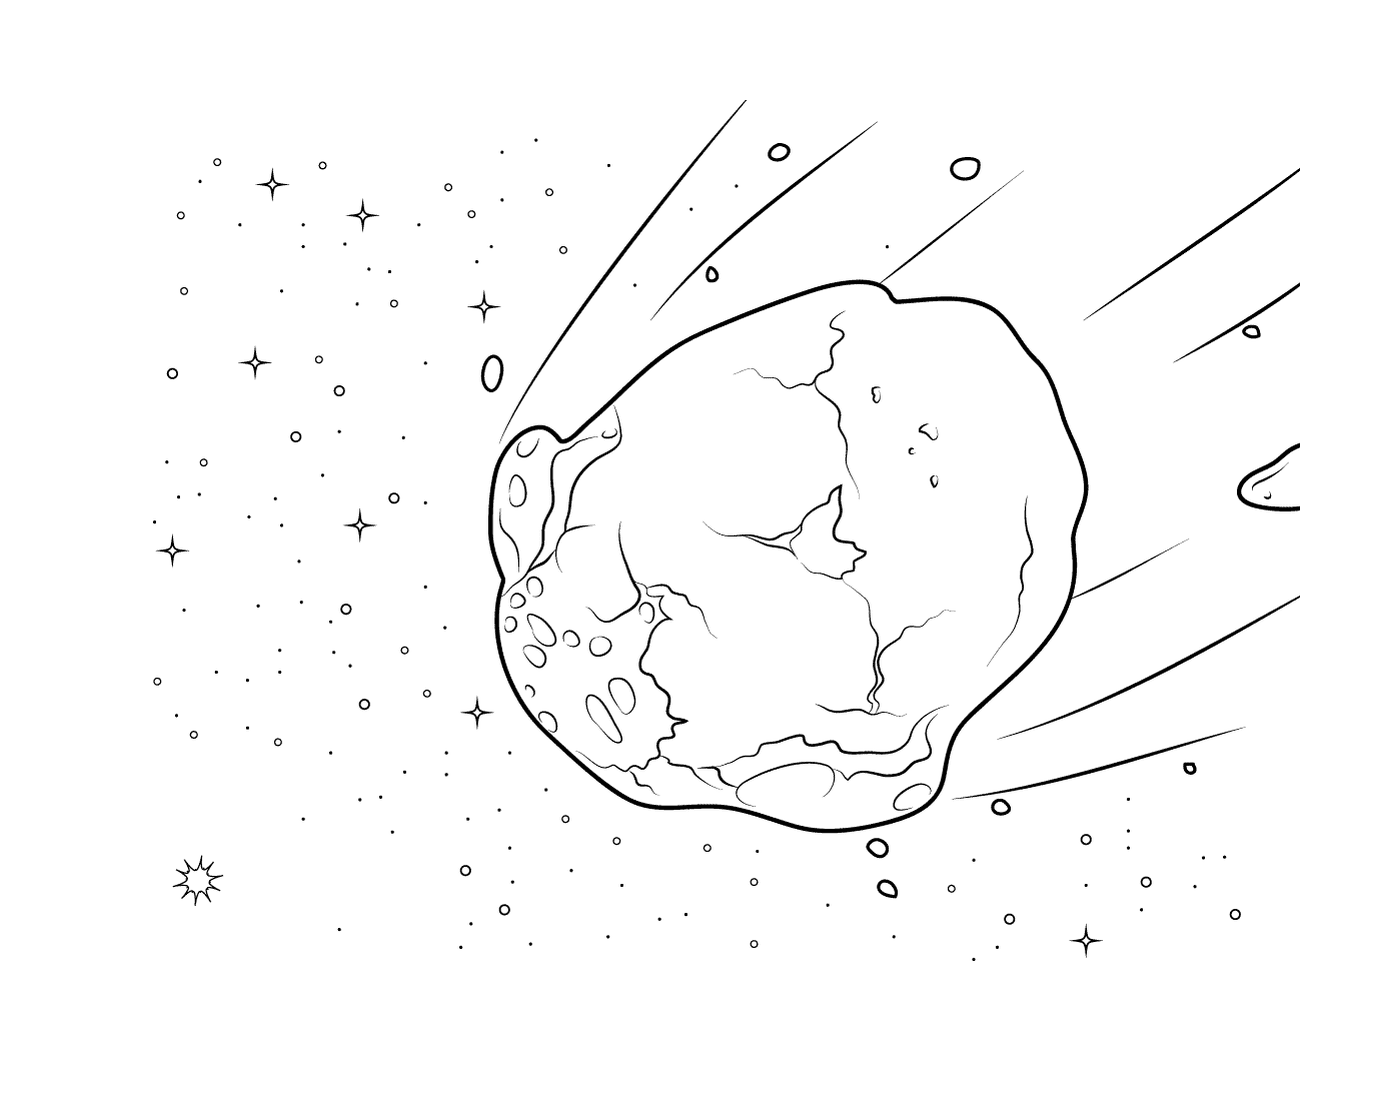   Astéroïde dans le ciel 